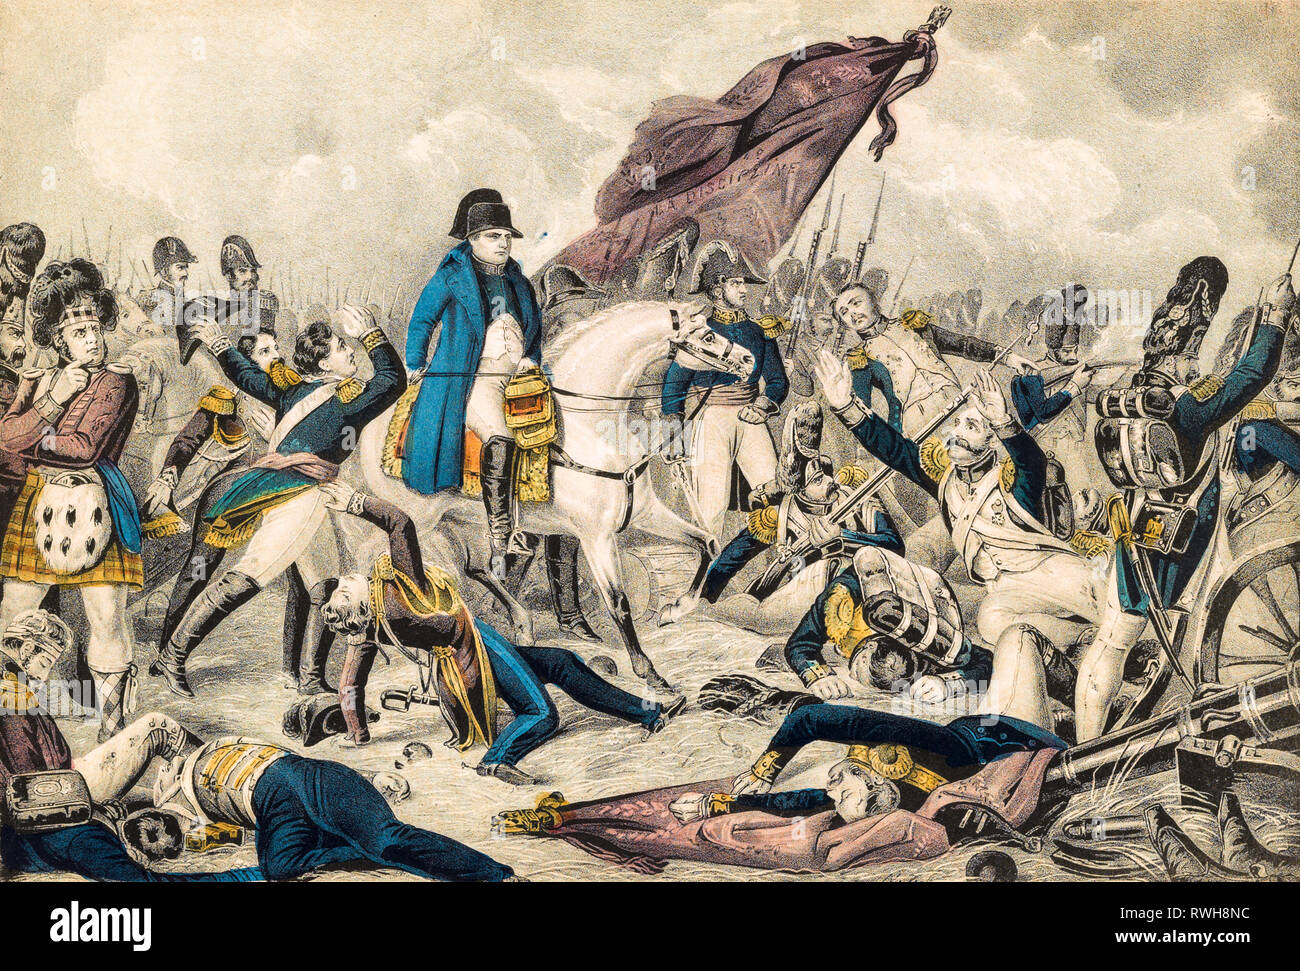 Schlacht von Waterloo, 18. Juni 1815, Napoleon Bonaparte auf Reiten unter seinen Truppen, Kupferstich, koloriert, N. Currier, C. 1835 Stockfoto